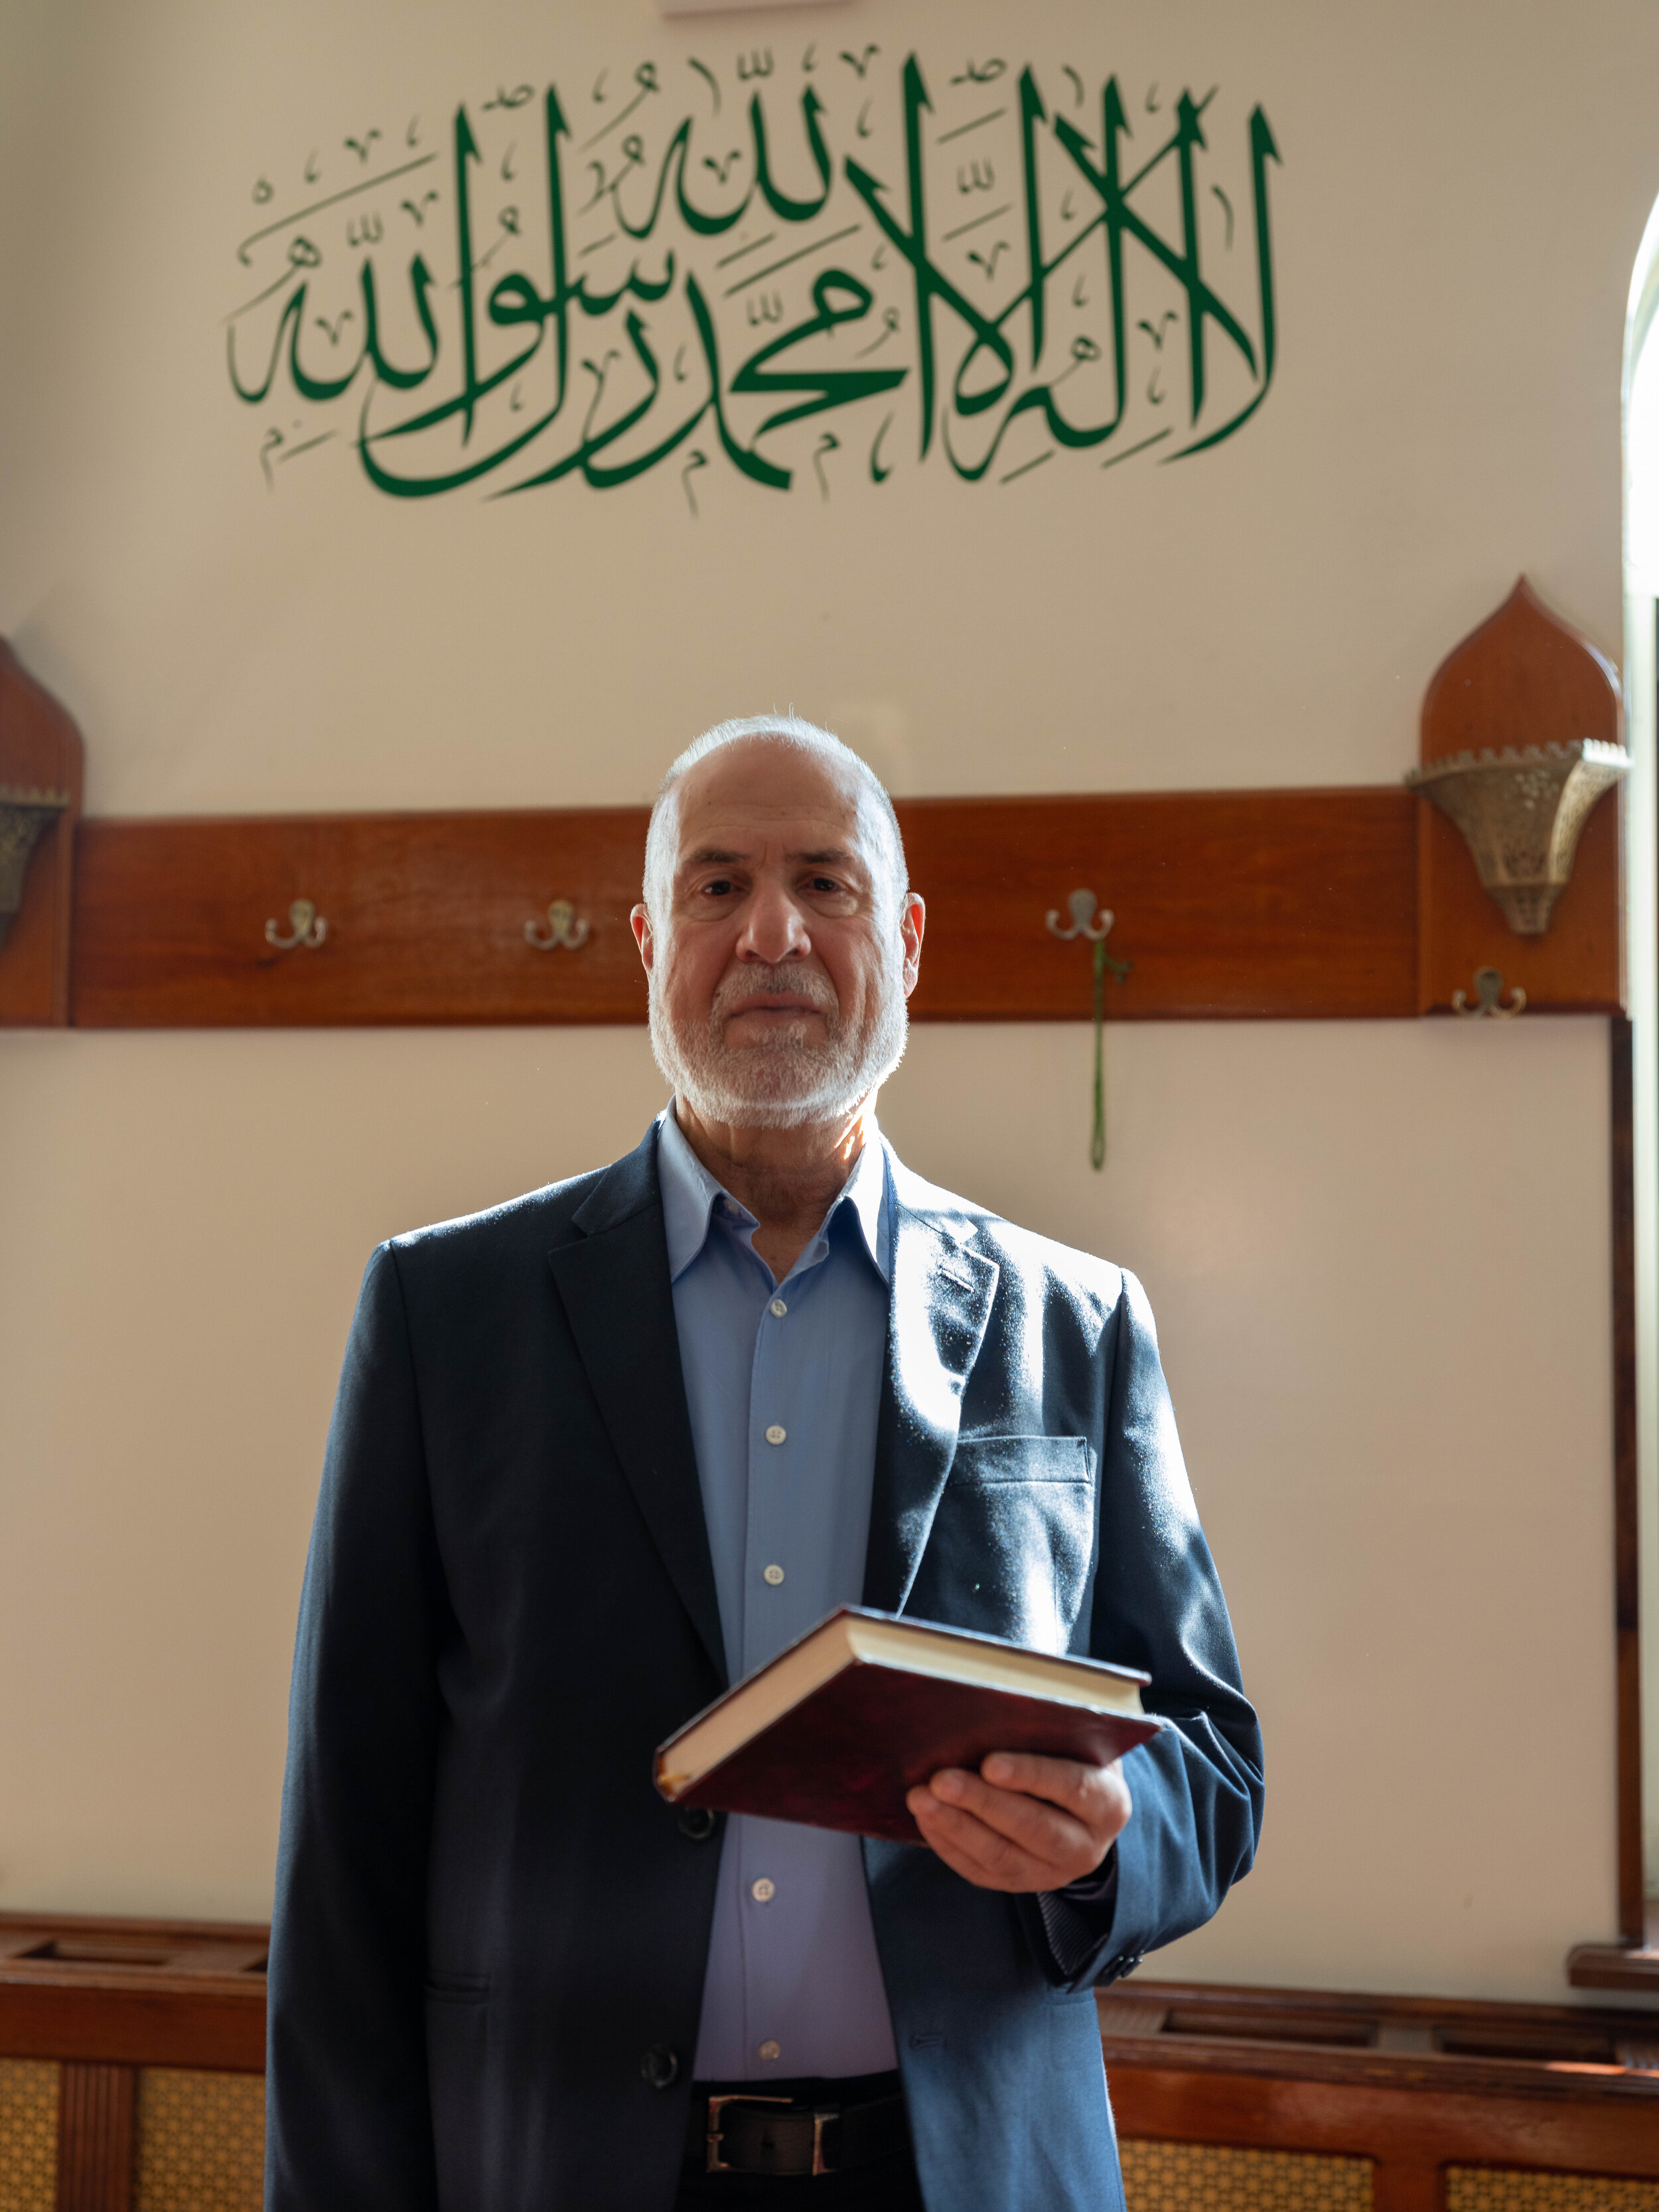  Dr. Ahmad Jaber, Founder, Arab-American Association of New York, Bay Ridge 